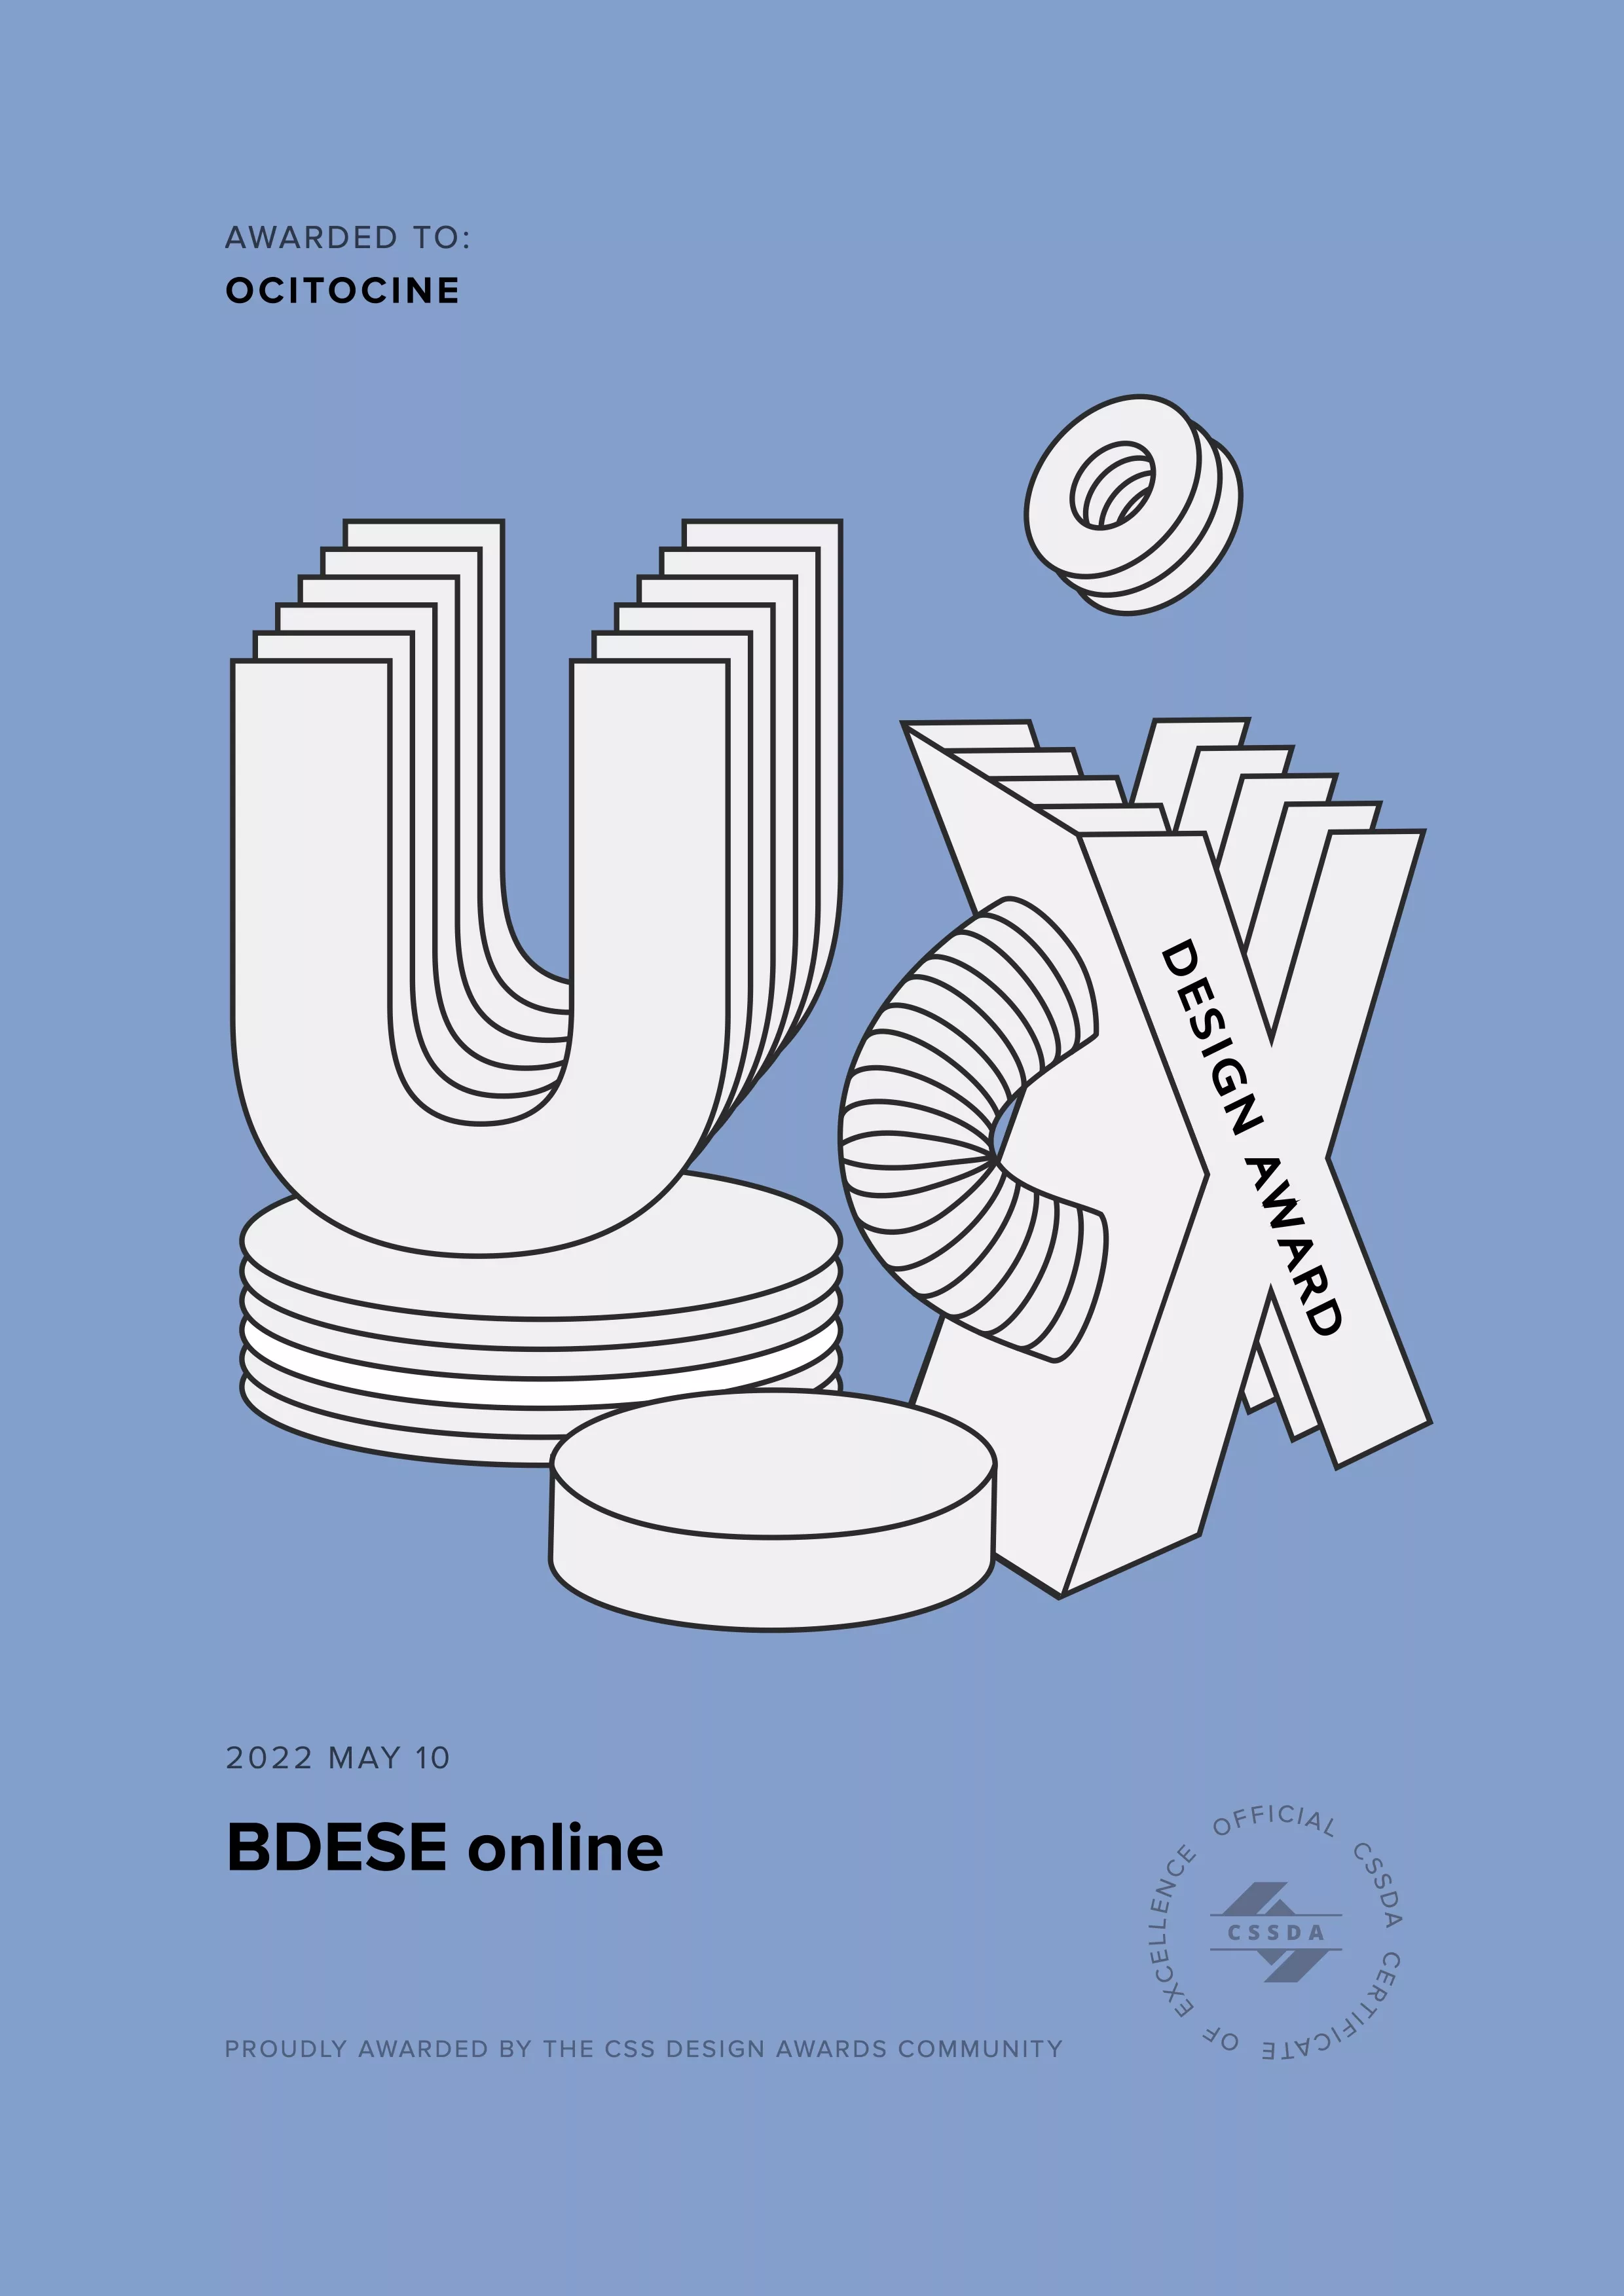 Ocitocine, agence créative web et branding, a remporté un prix "CSSDA UX Design Award" pour la réalisation du site web bdes-online.fr